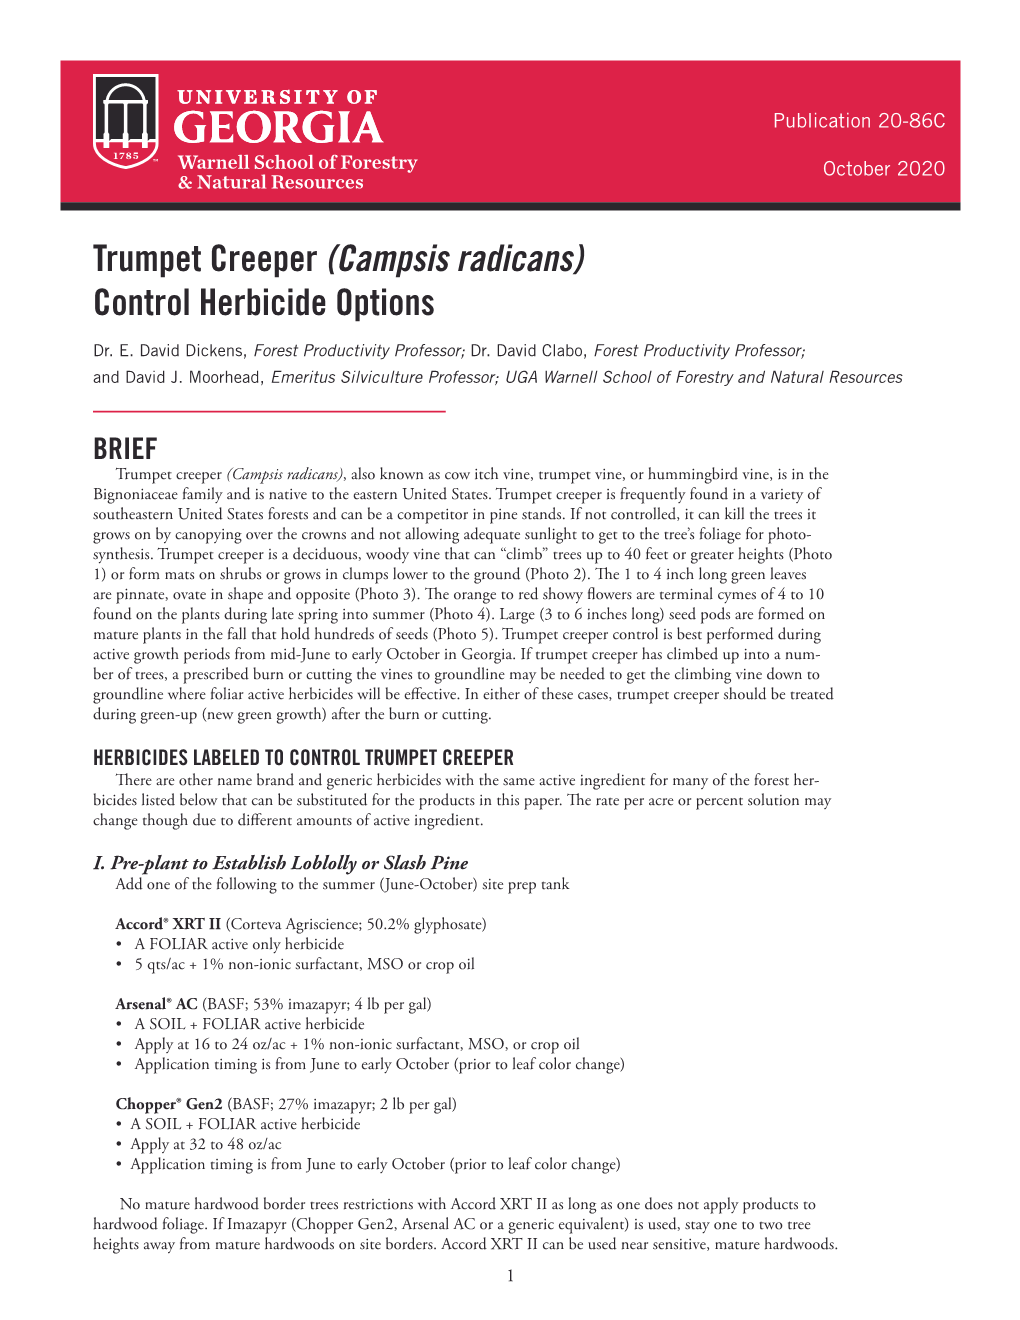 Trumpet Creeper (Campsis Radicans) Control Herbicide Options